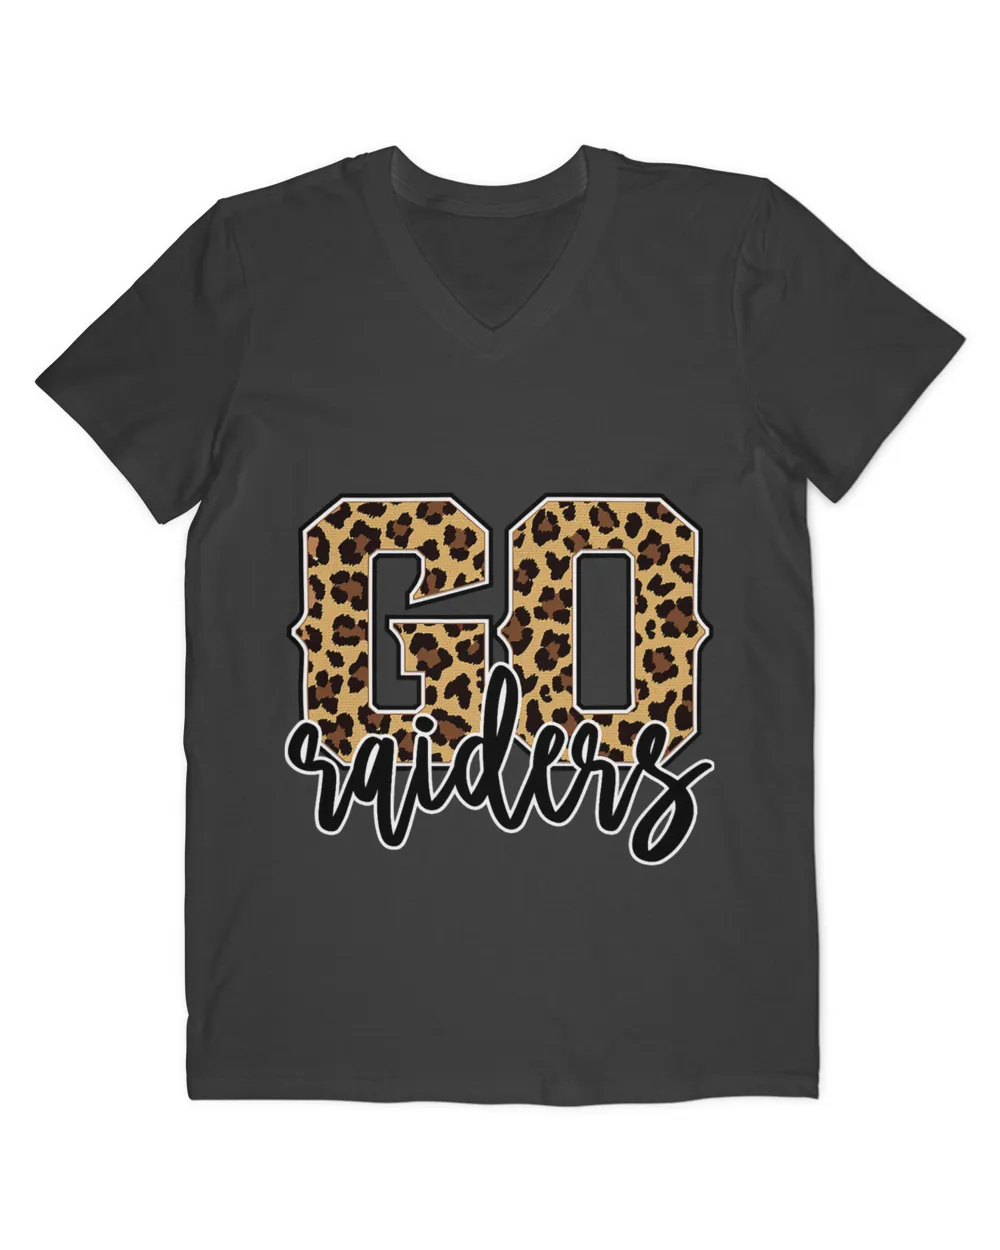 Raiders Go Raiders Leopard Print Womens Cheetah Graphic